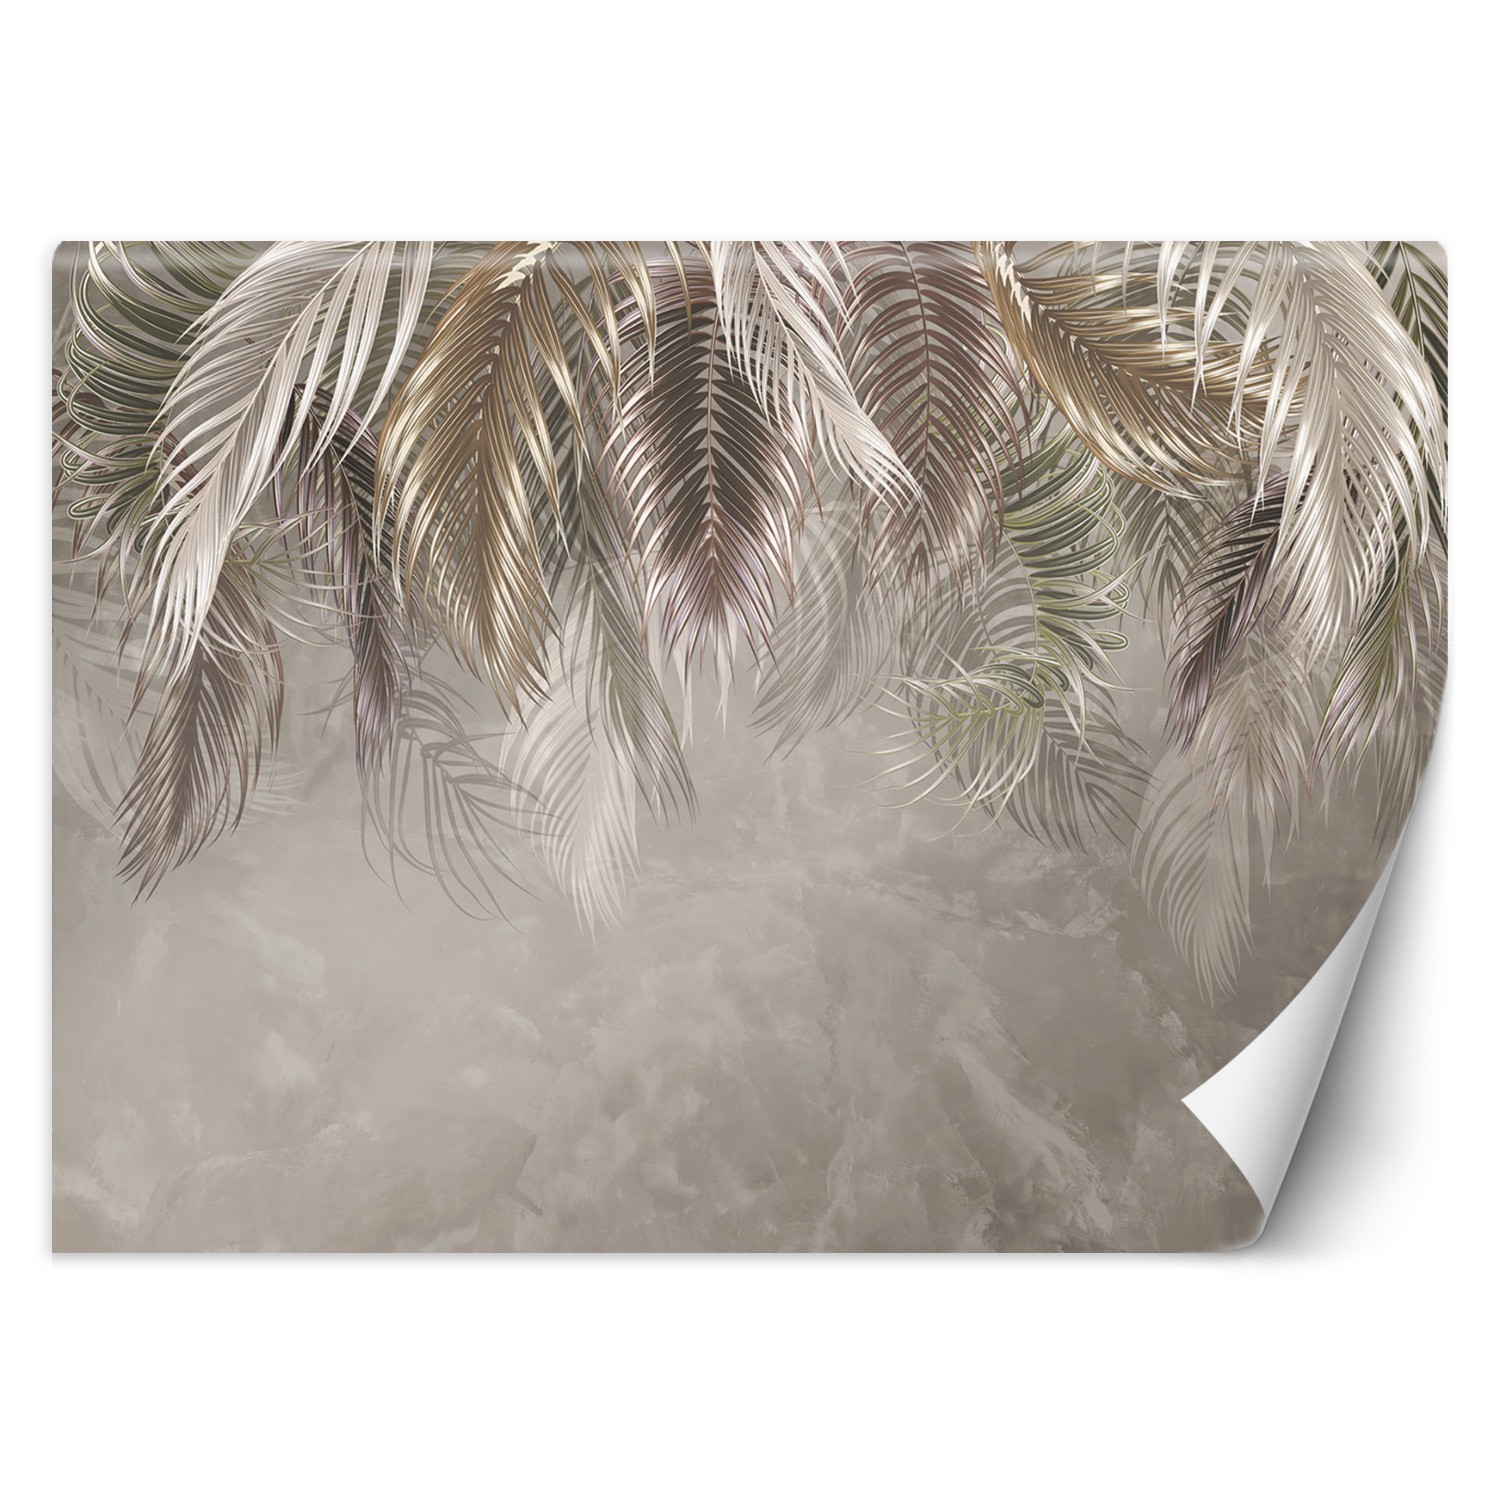 Trend24 – Behang – Palmbladeren 3D – Vliesbehang – Fotobehang 3D – Behang Woonkamer – 450x315x2 cm – Incl. behanglijm